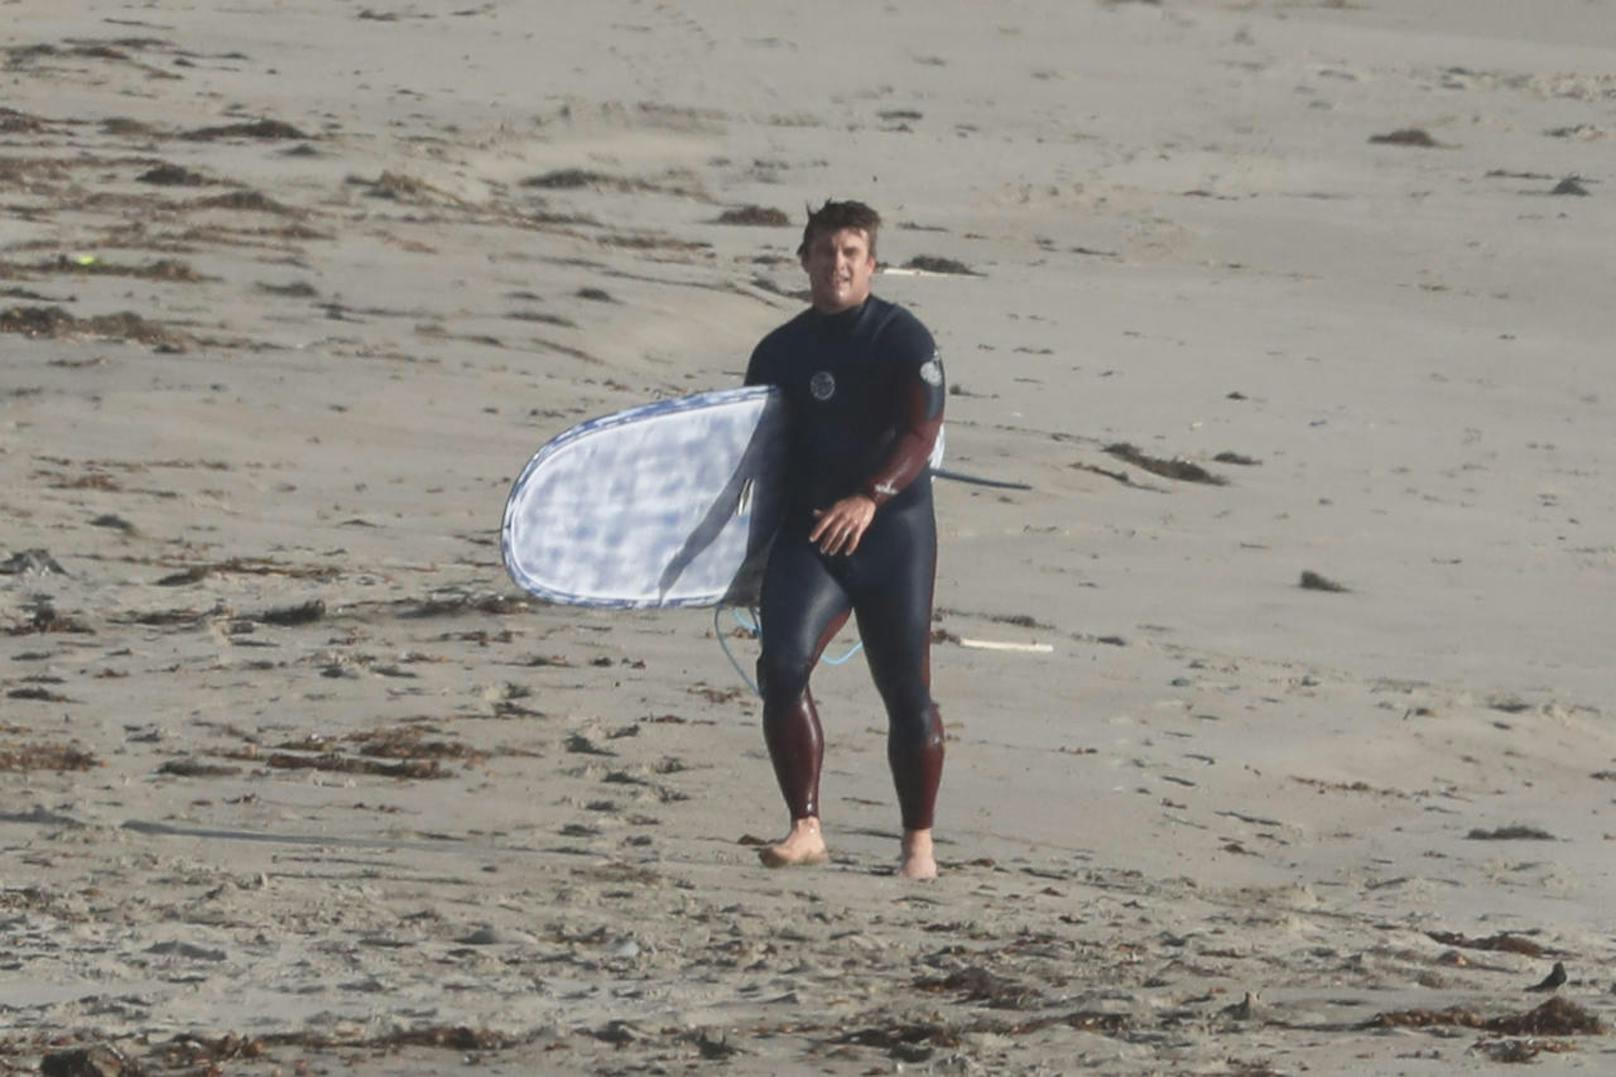 Die Hemsworth-Brüder kommen aus Australien, das Surfen liegt ihnen im Blut. Hier Luke Hemsworth mit seinem Board